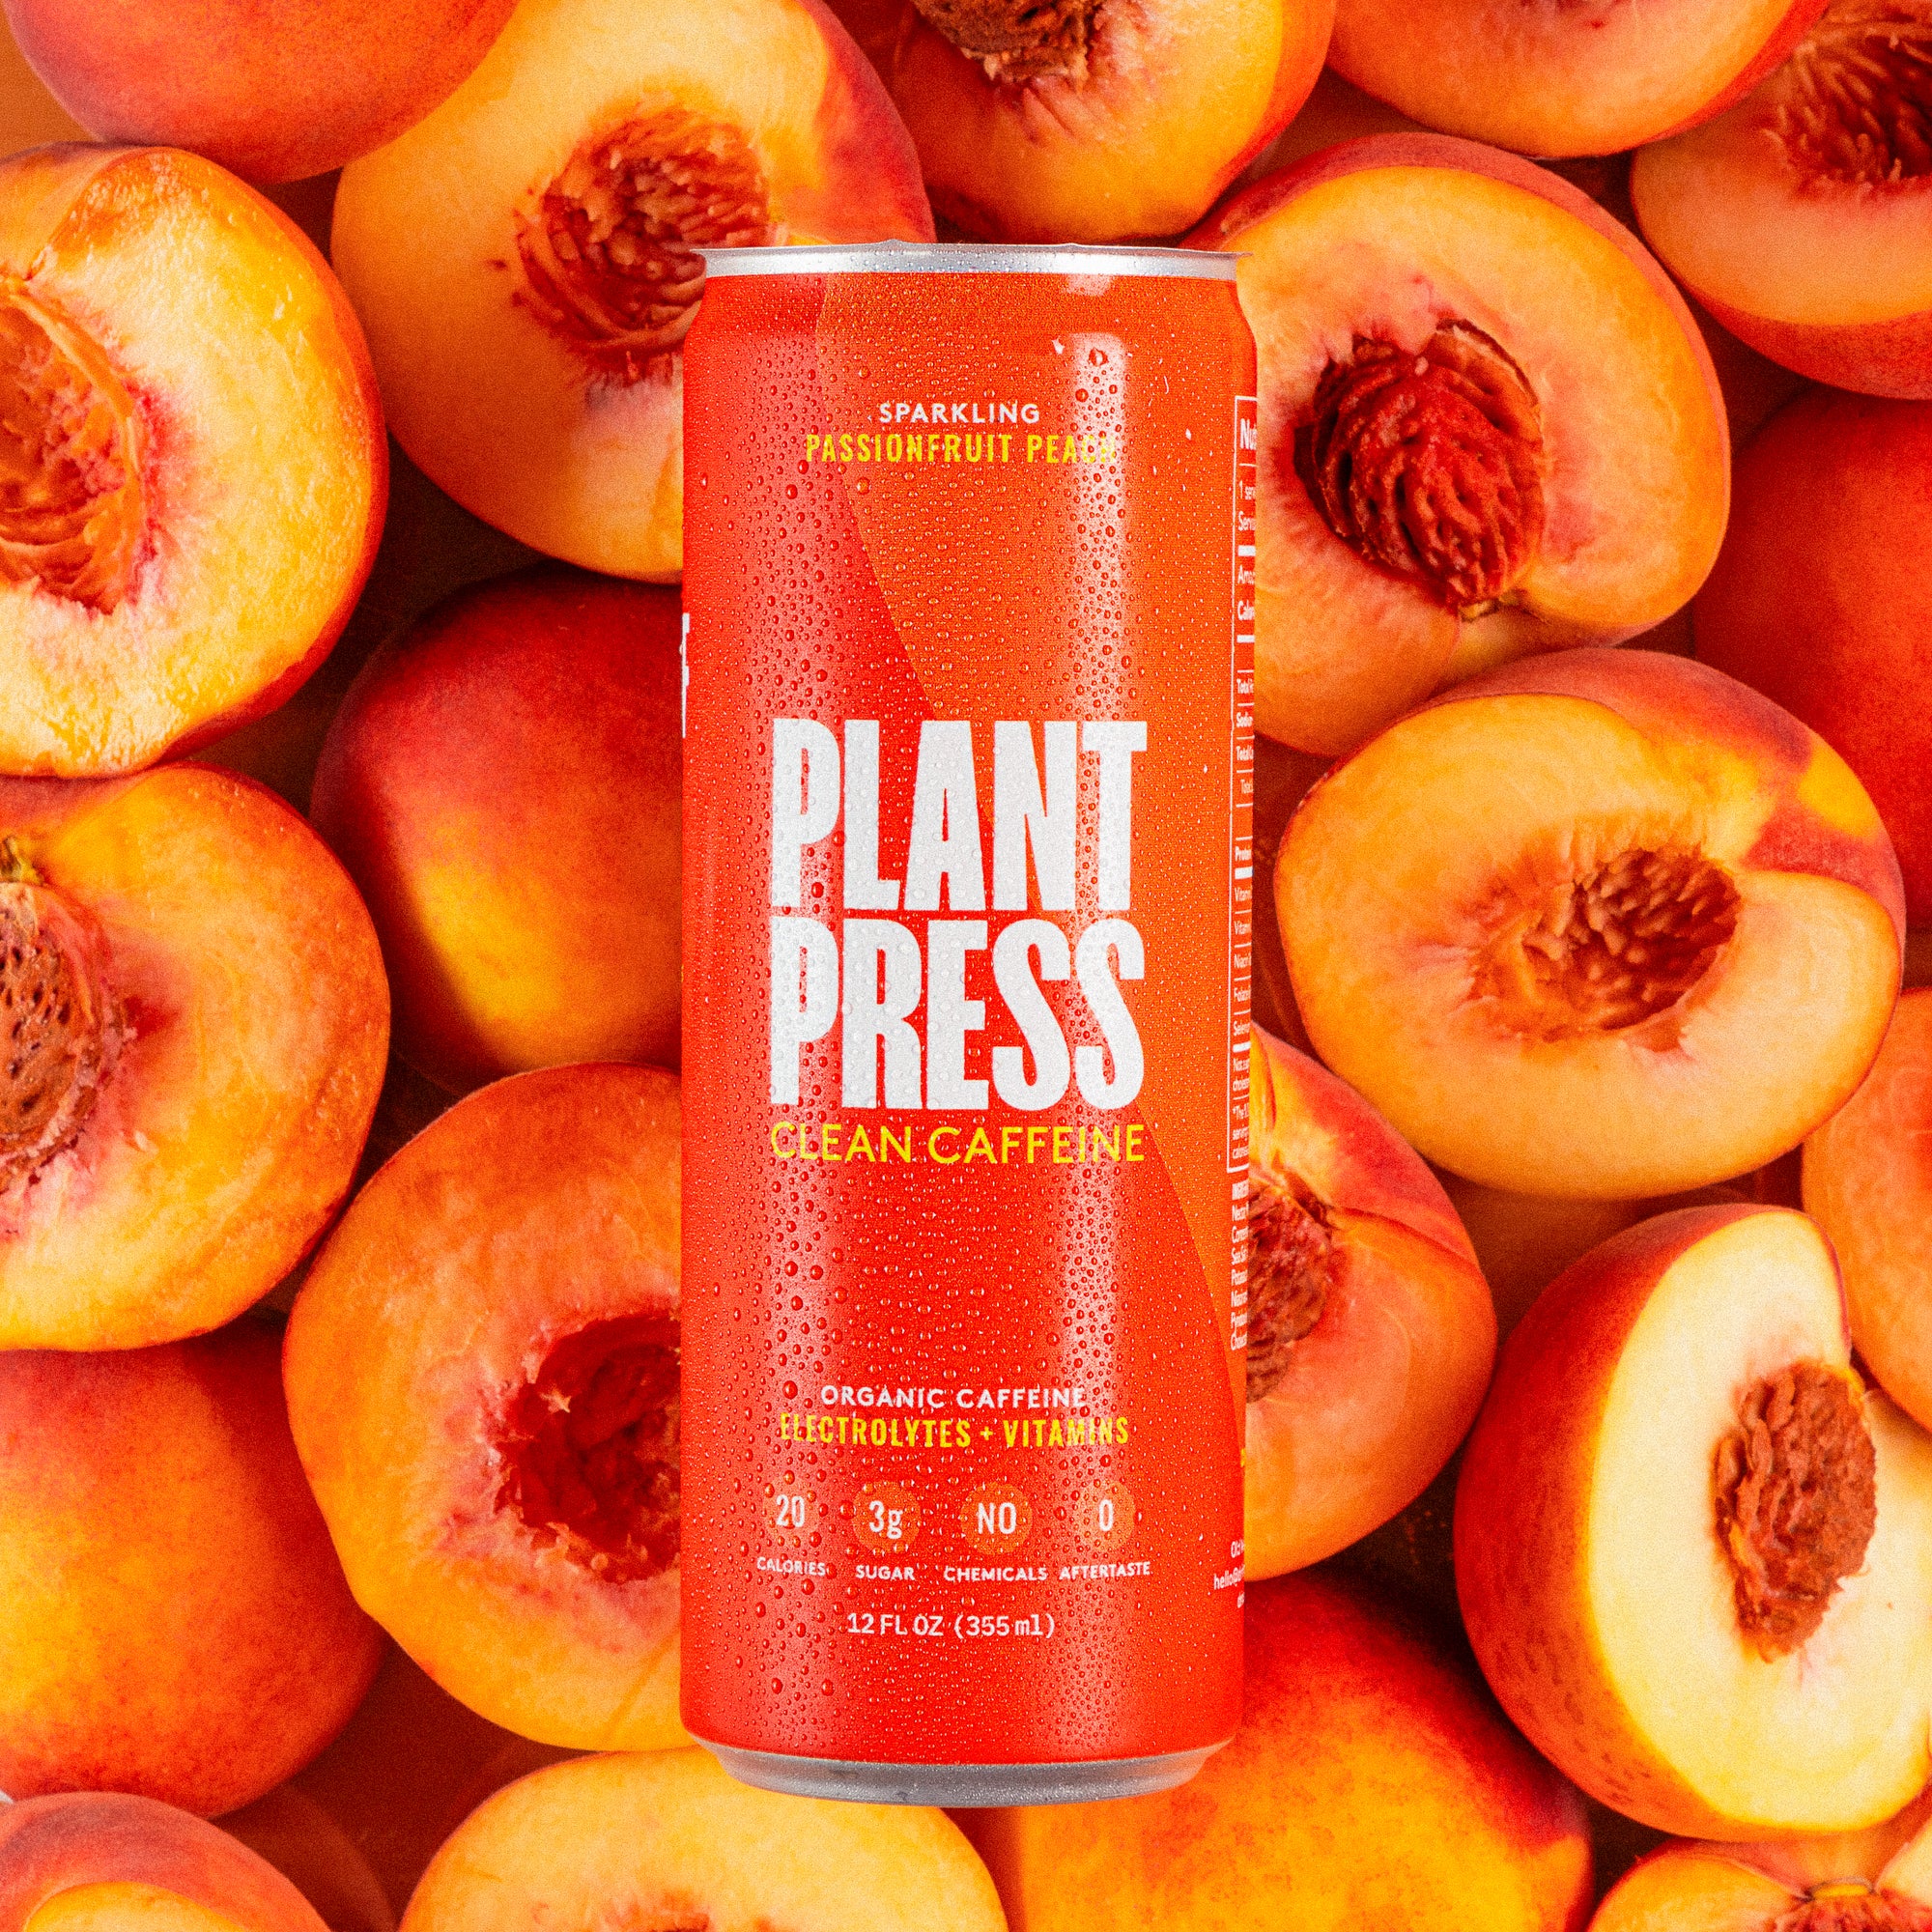 Passionfruit Peach